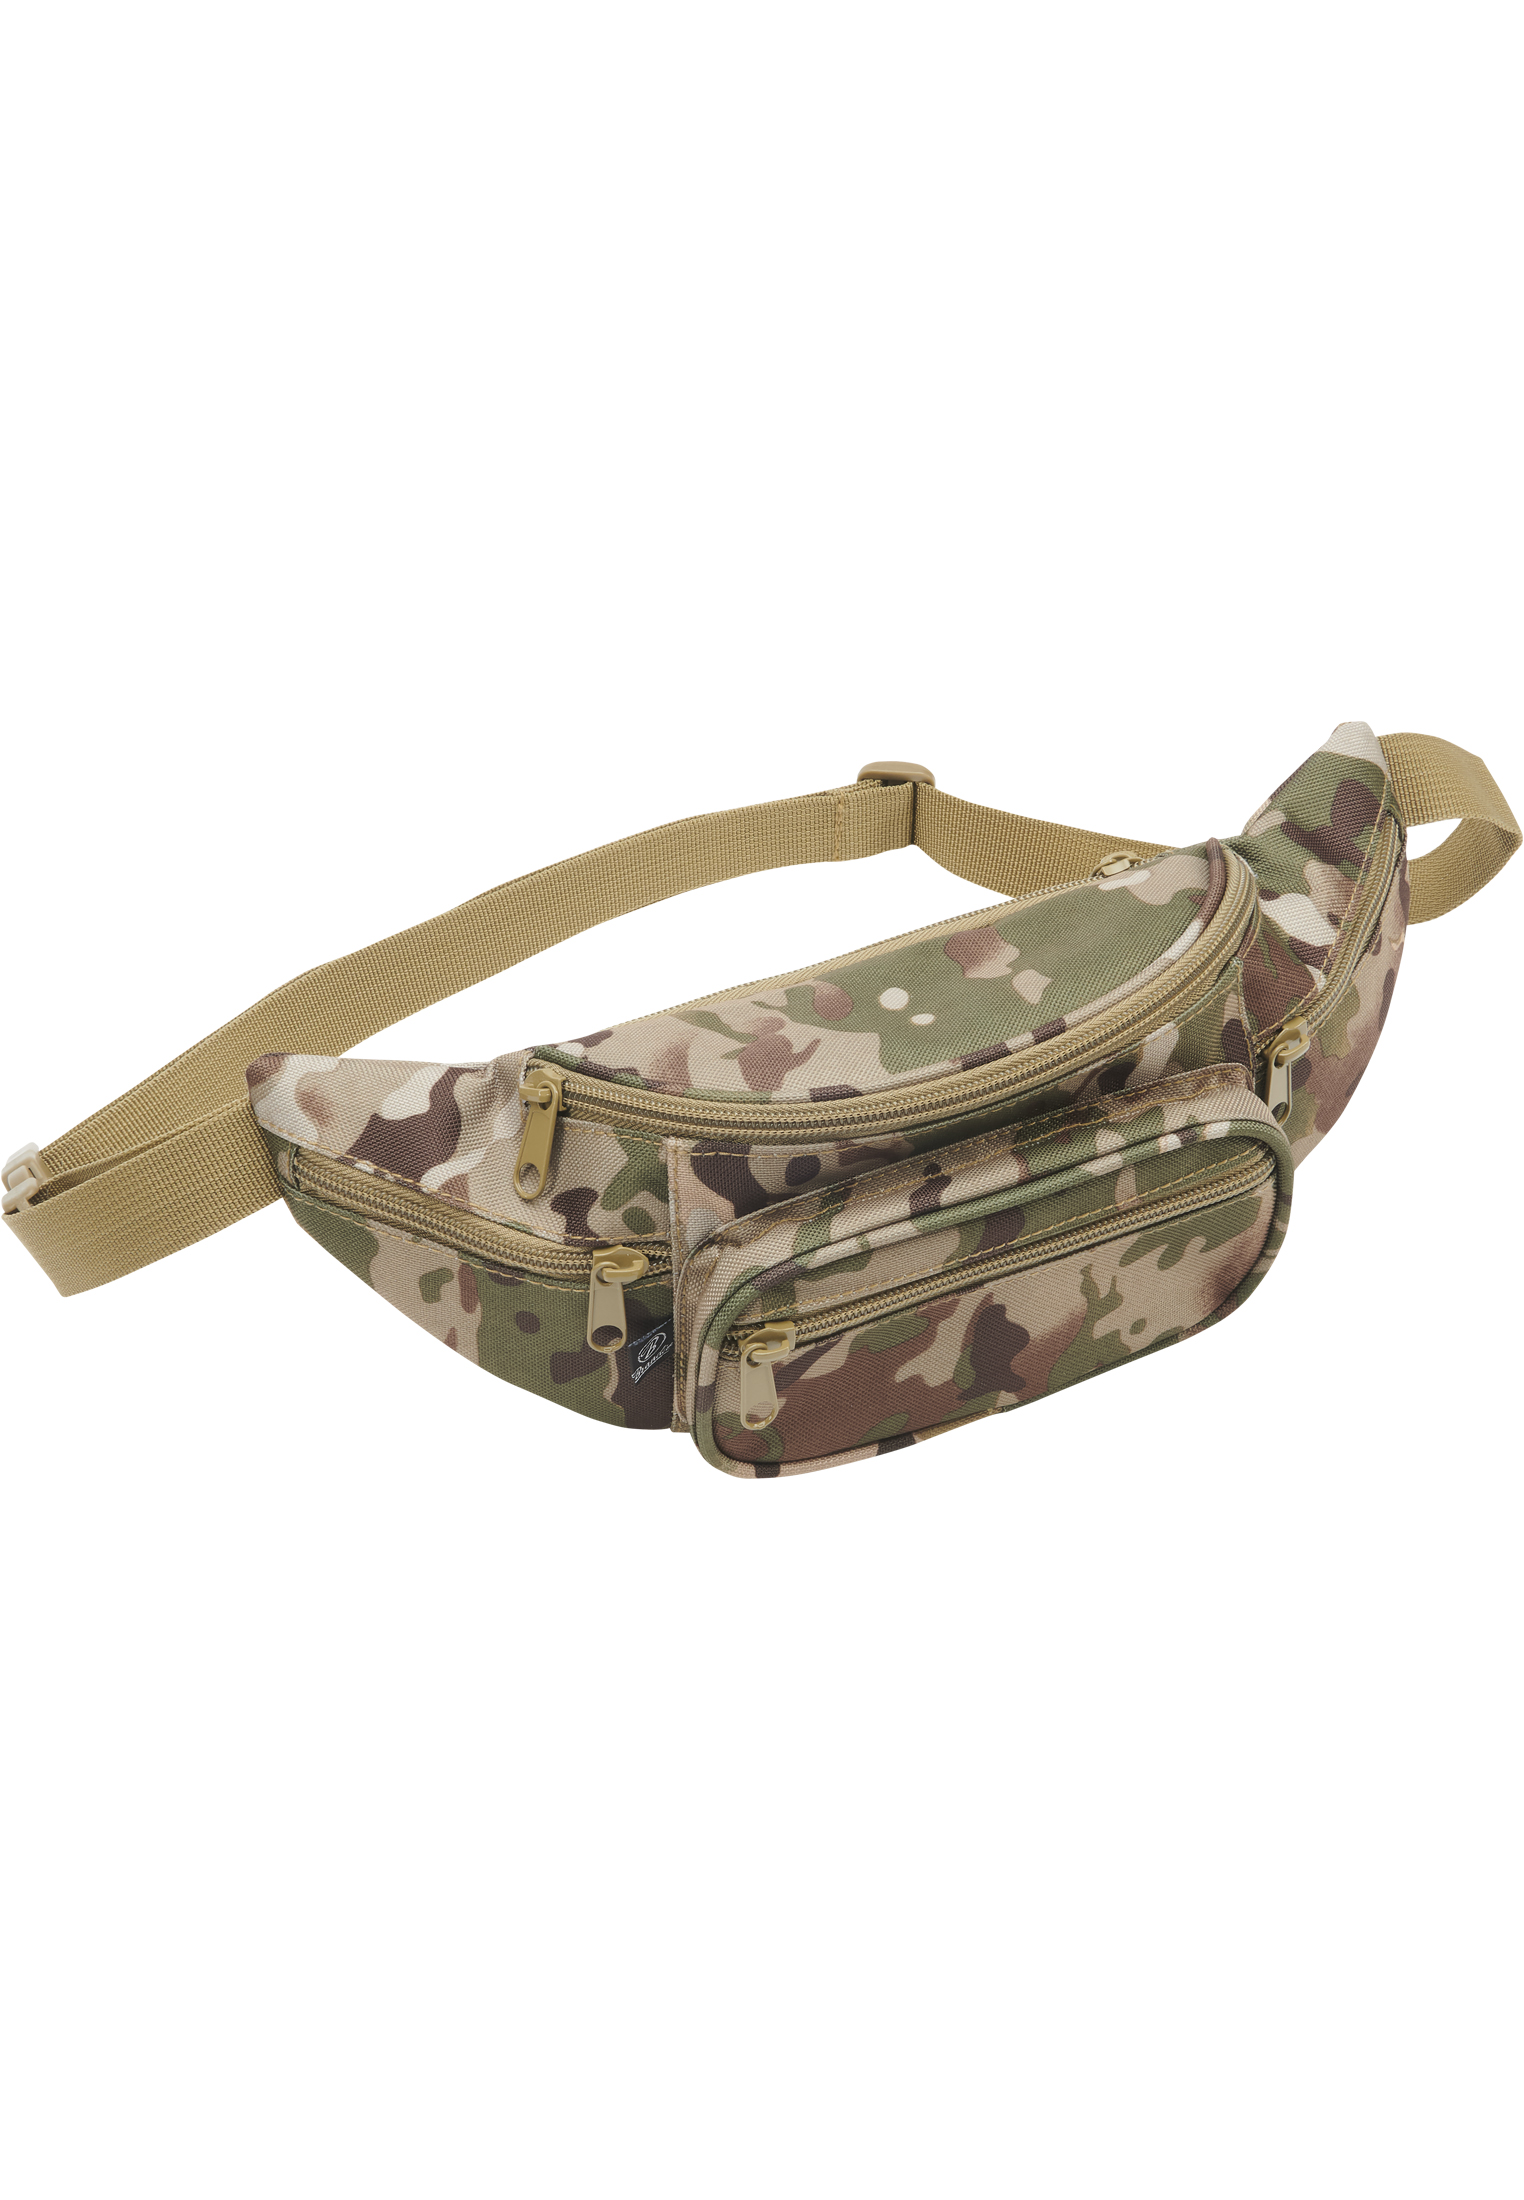 Taschen Pocket Hip Bag in Farbe tactical camo